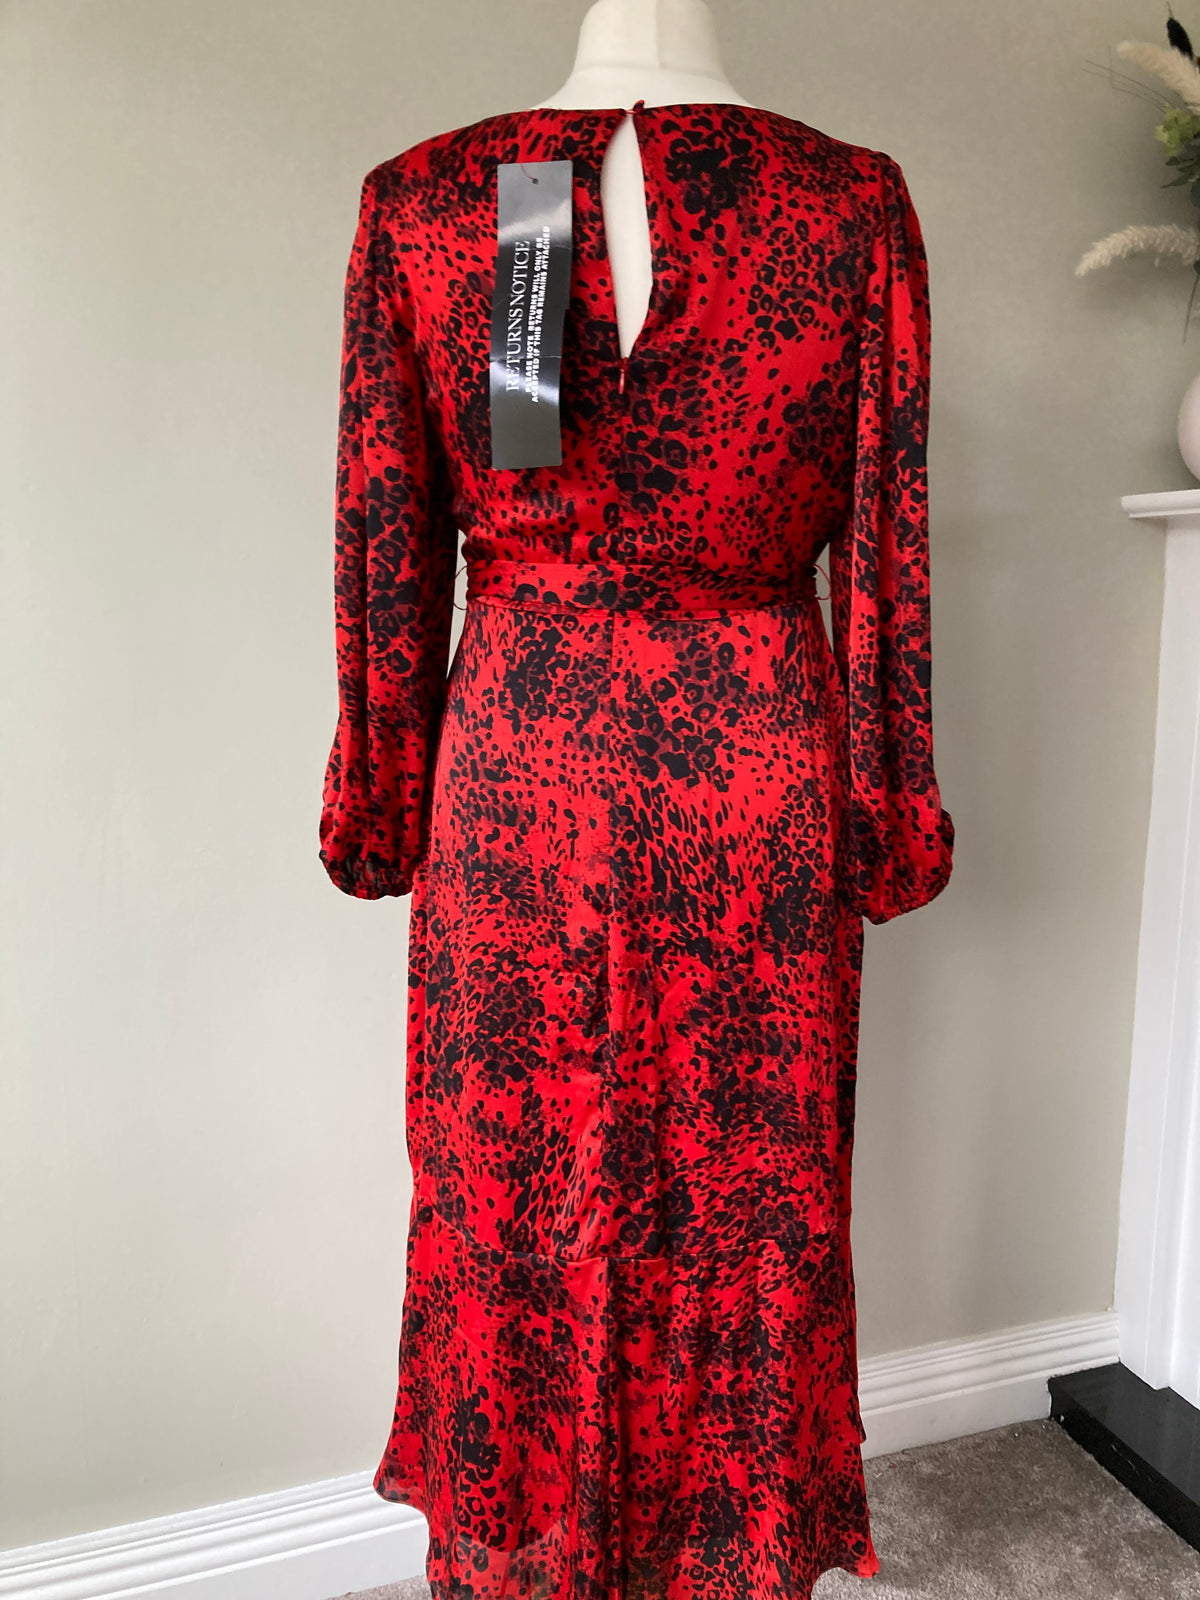 Red Animal Print Midi Dress by Kaleidoscope size 12